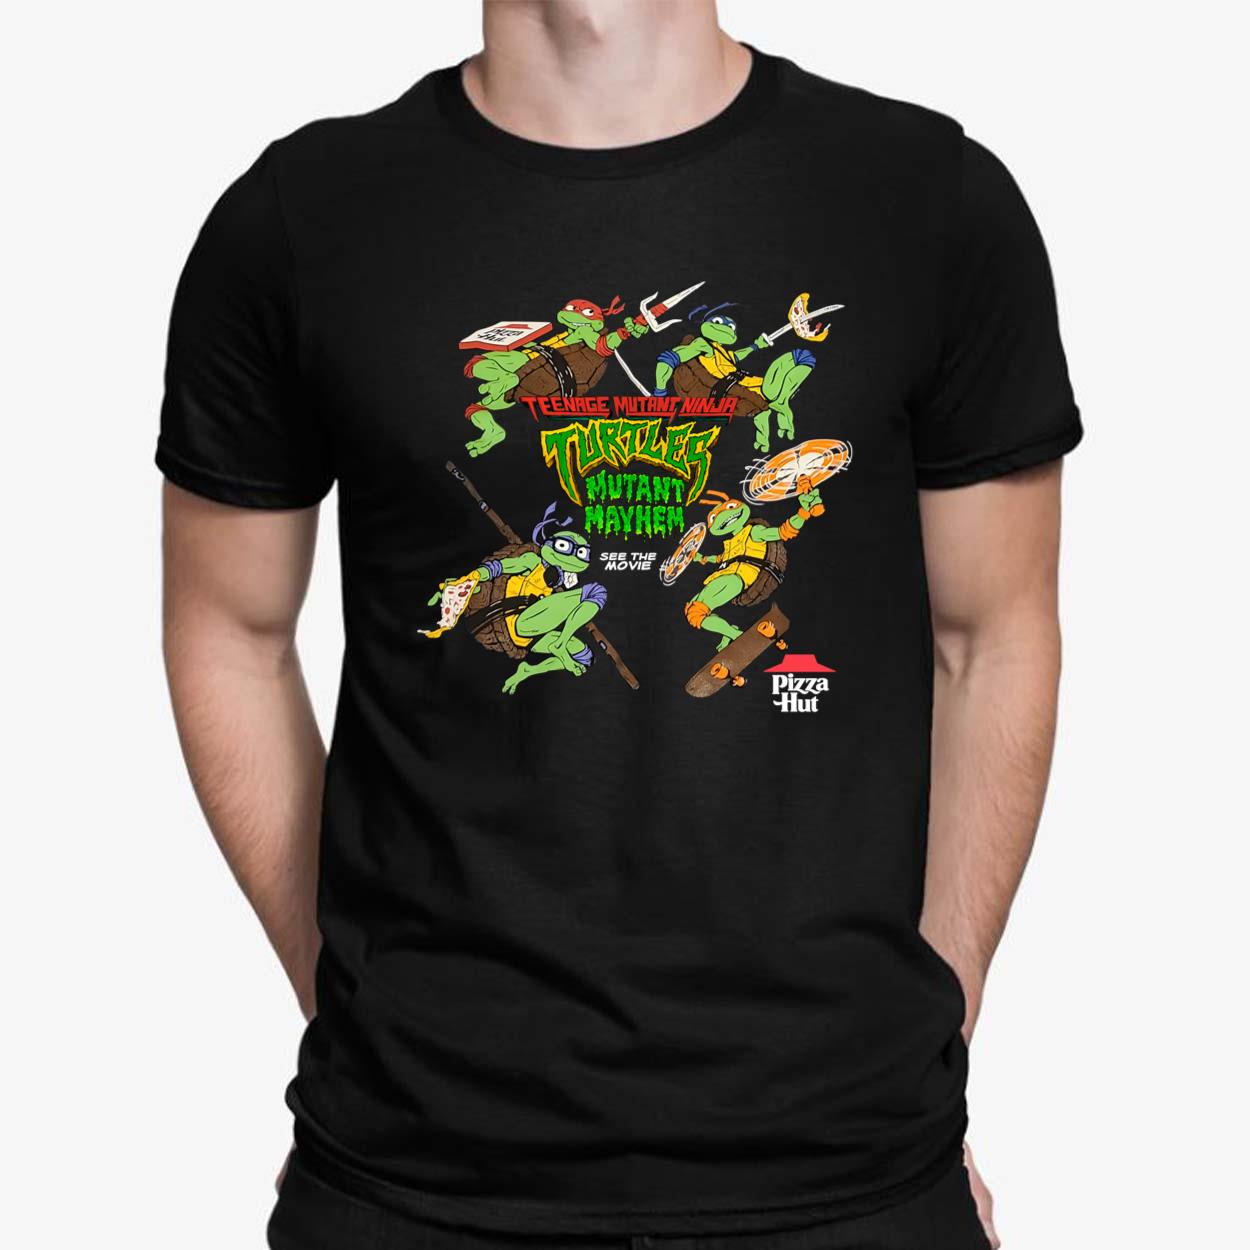 Teenage Mutant Ninja Turtles Authentic Vintage T-Shirt Small